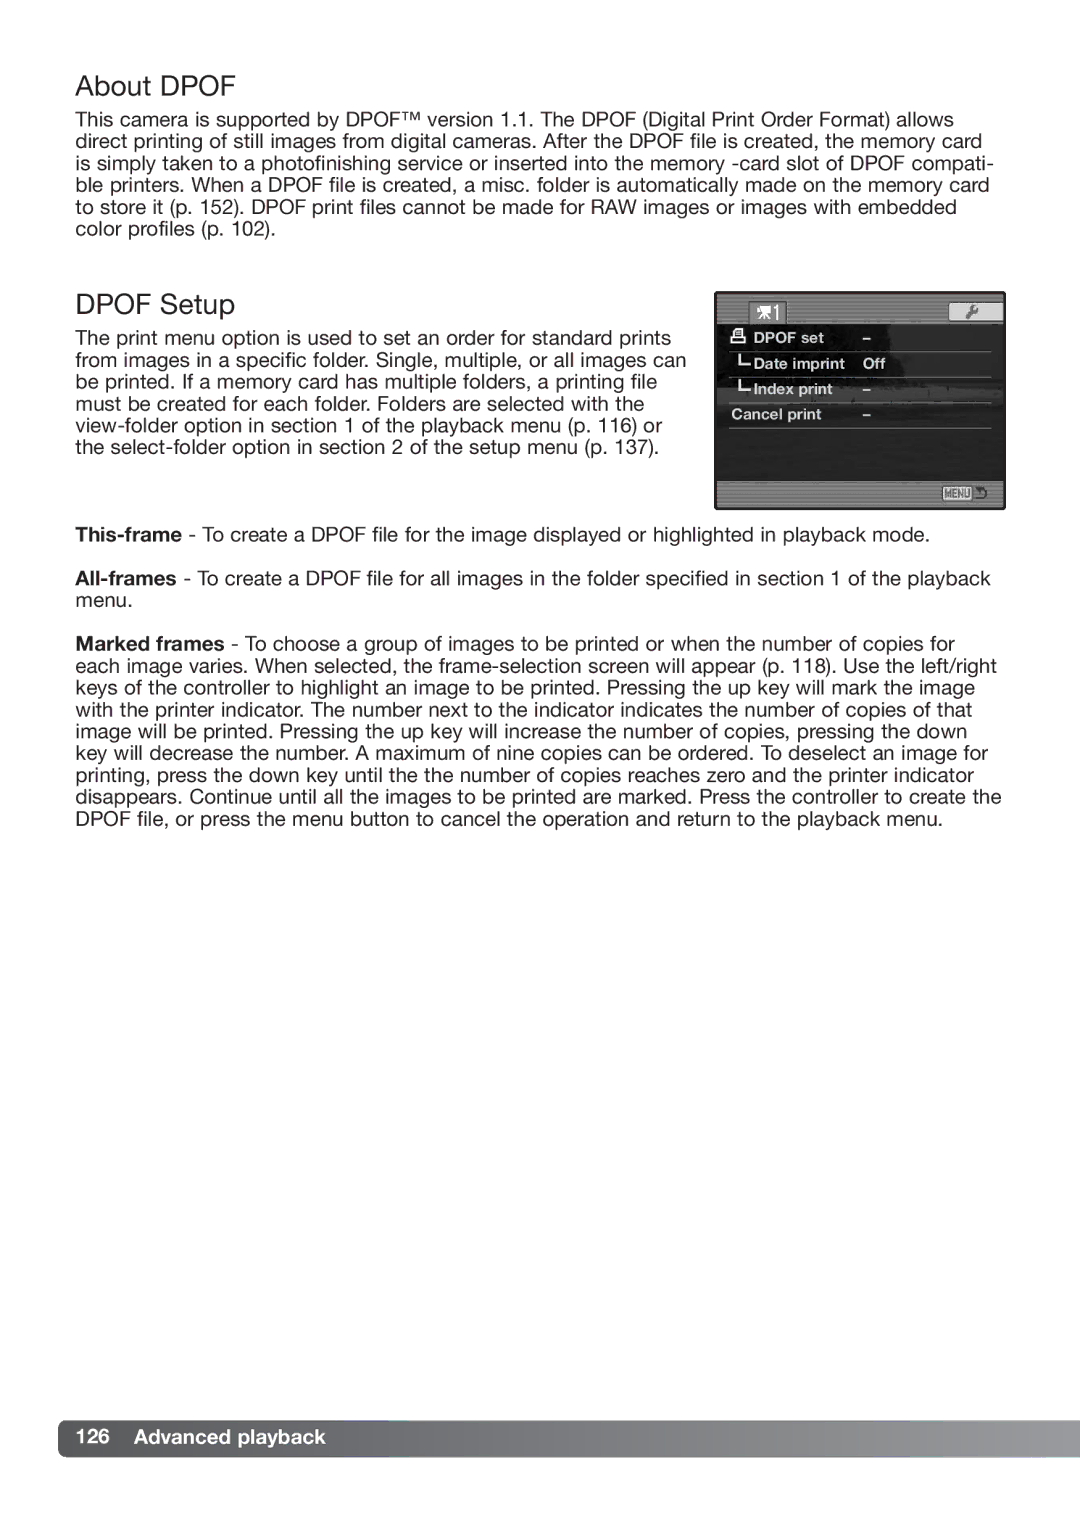 Konica Minolta DiMAGE_A2 instruction manual About Dpof, Dpof Setup 